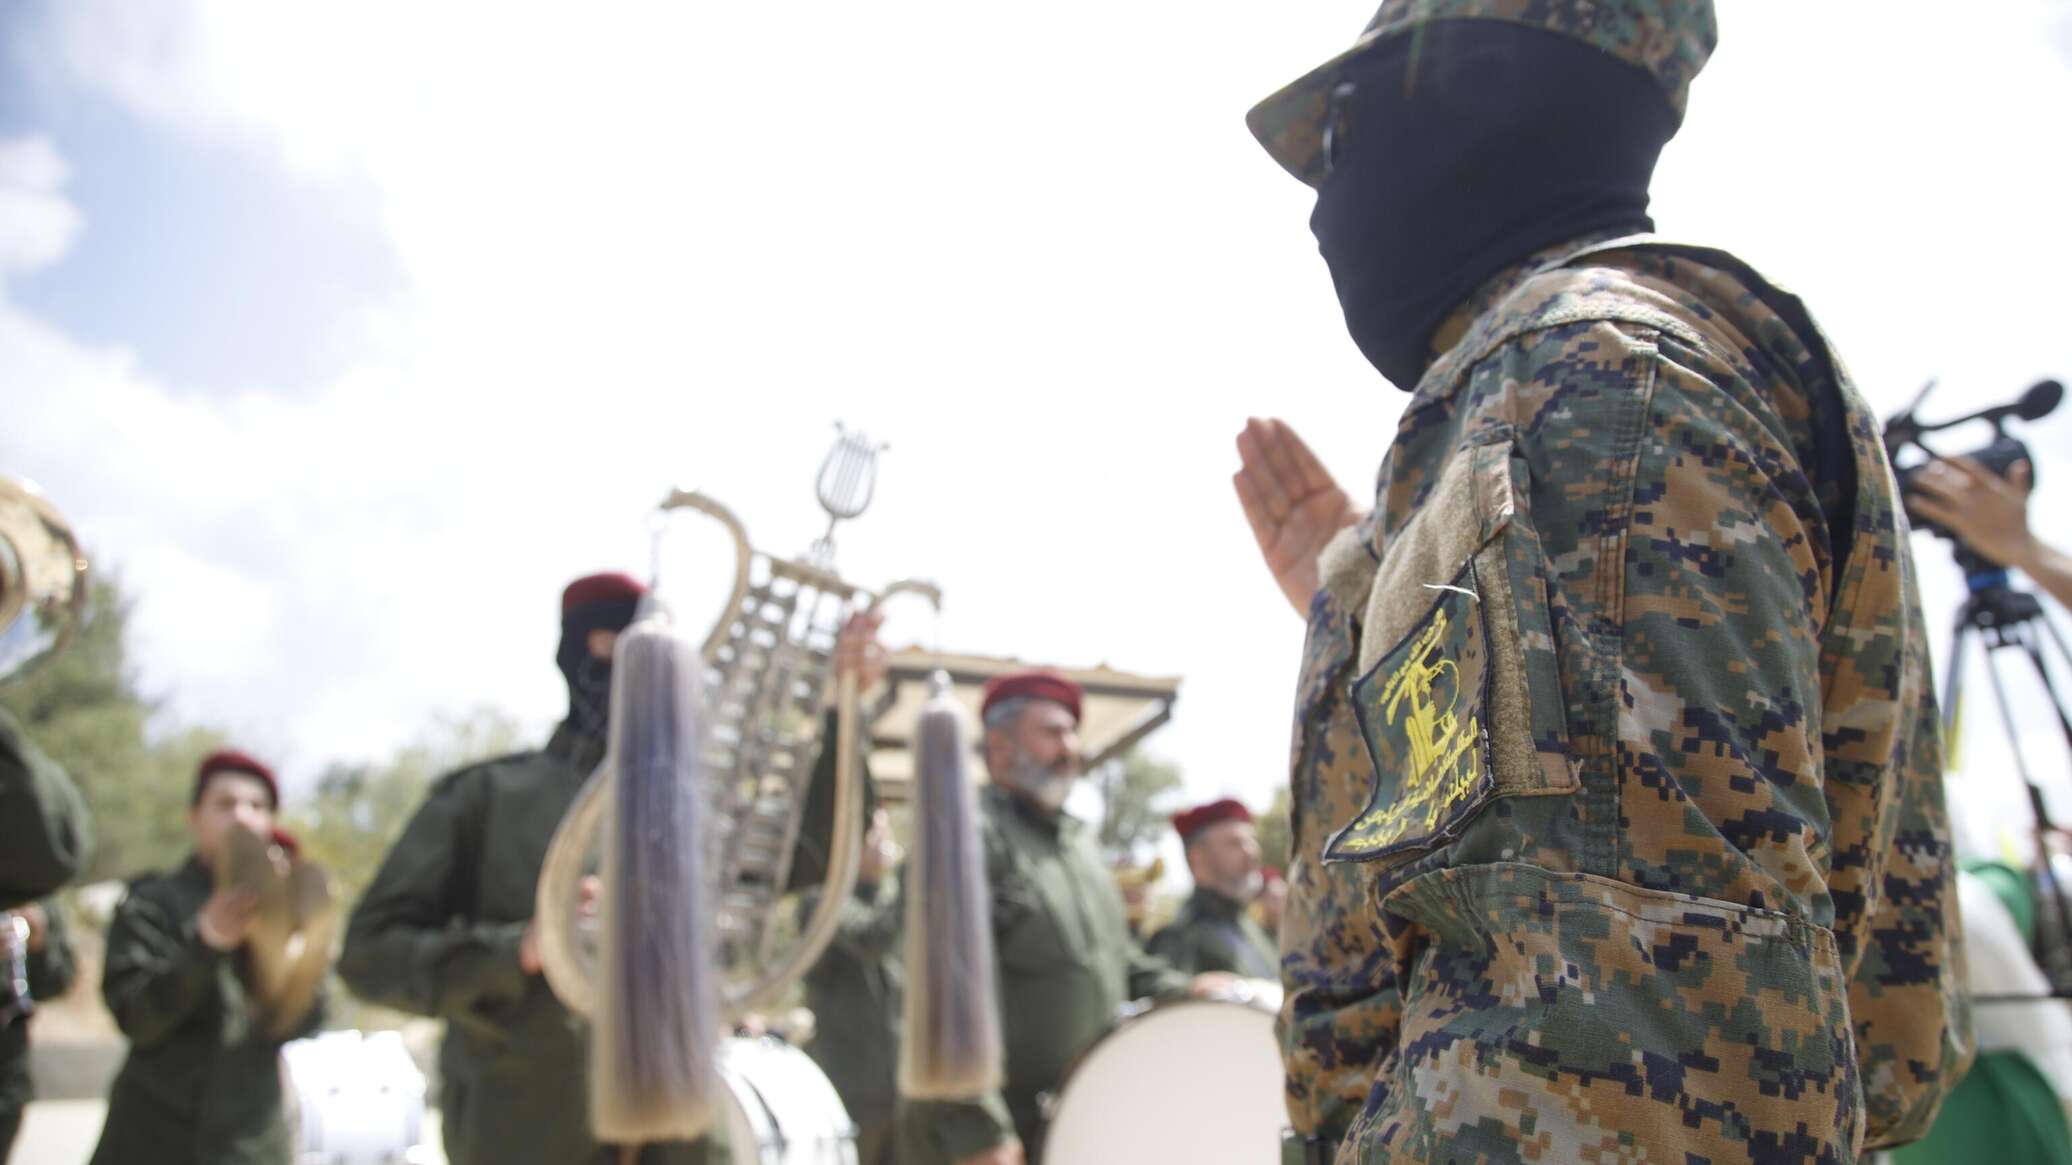 أمين عام حزب البعث يبدي استعداد "قوى المقاومة" اللبنانية لمواجهة إسرائيل